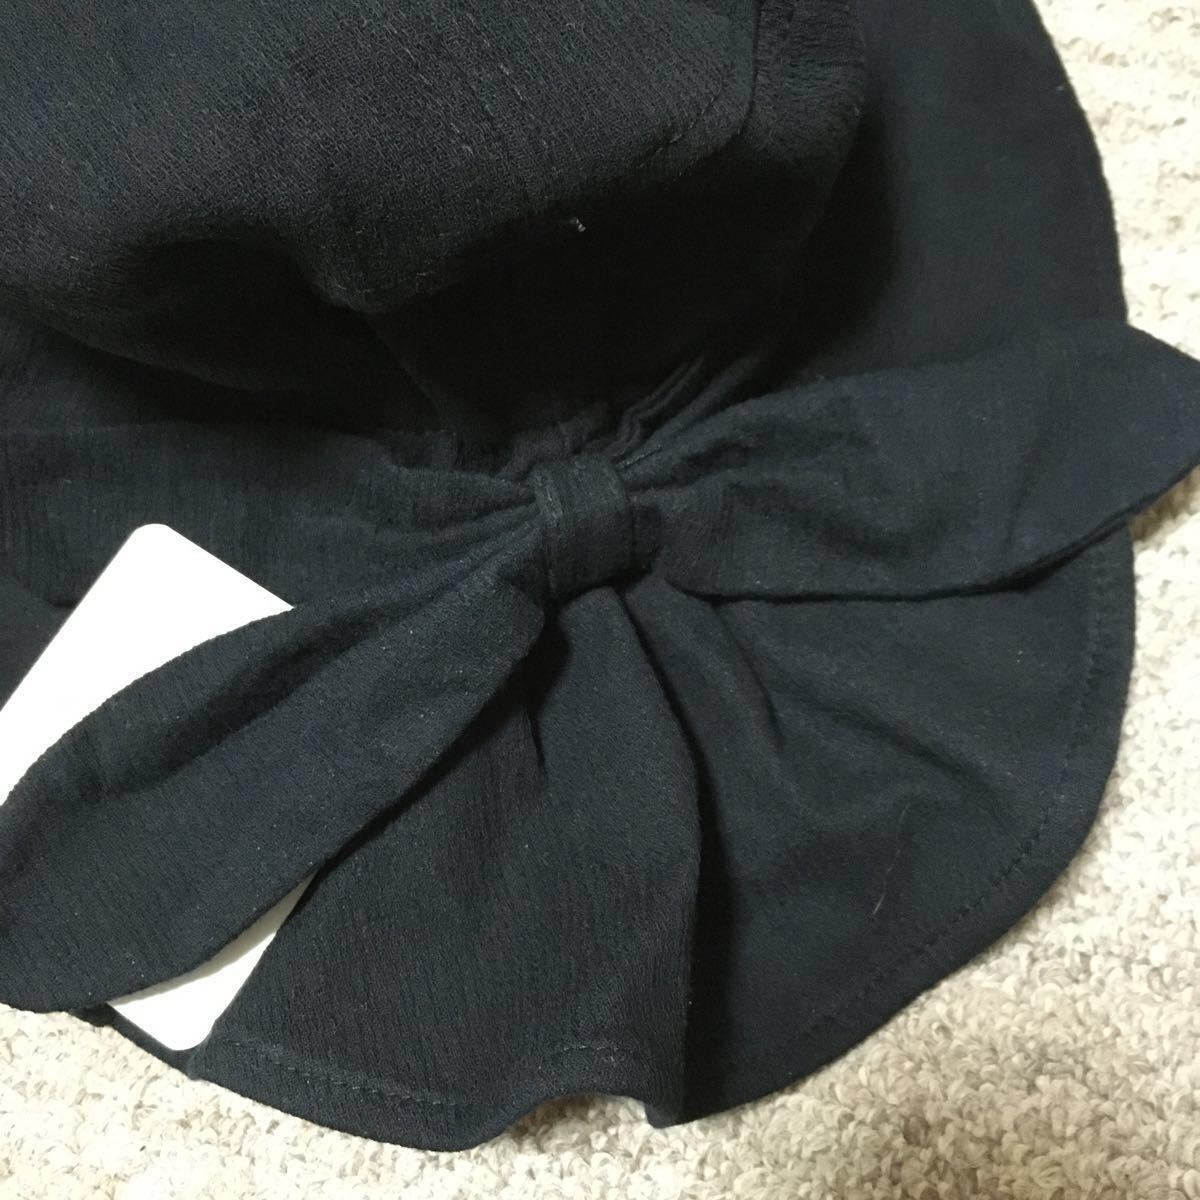 新品 リボンハット。ブラック・黒。折り畳んで仕舞えます。布製。タグ付き。1点350円、2点700円。